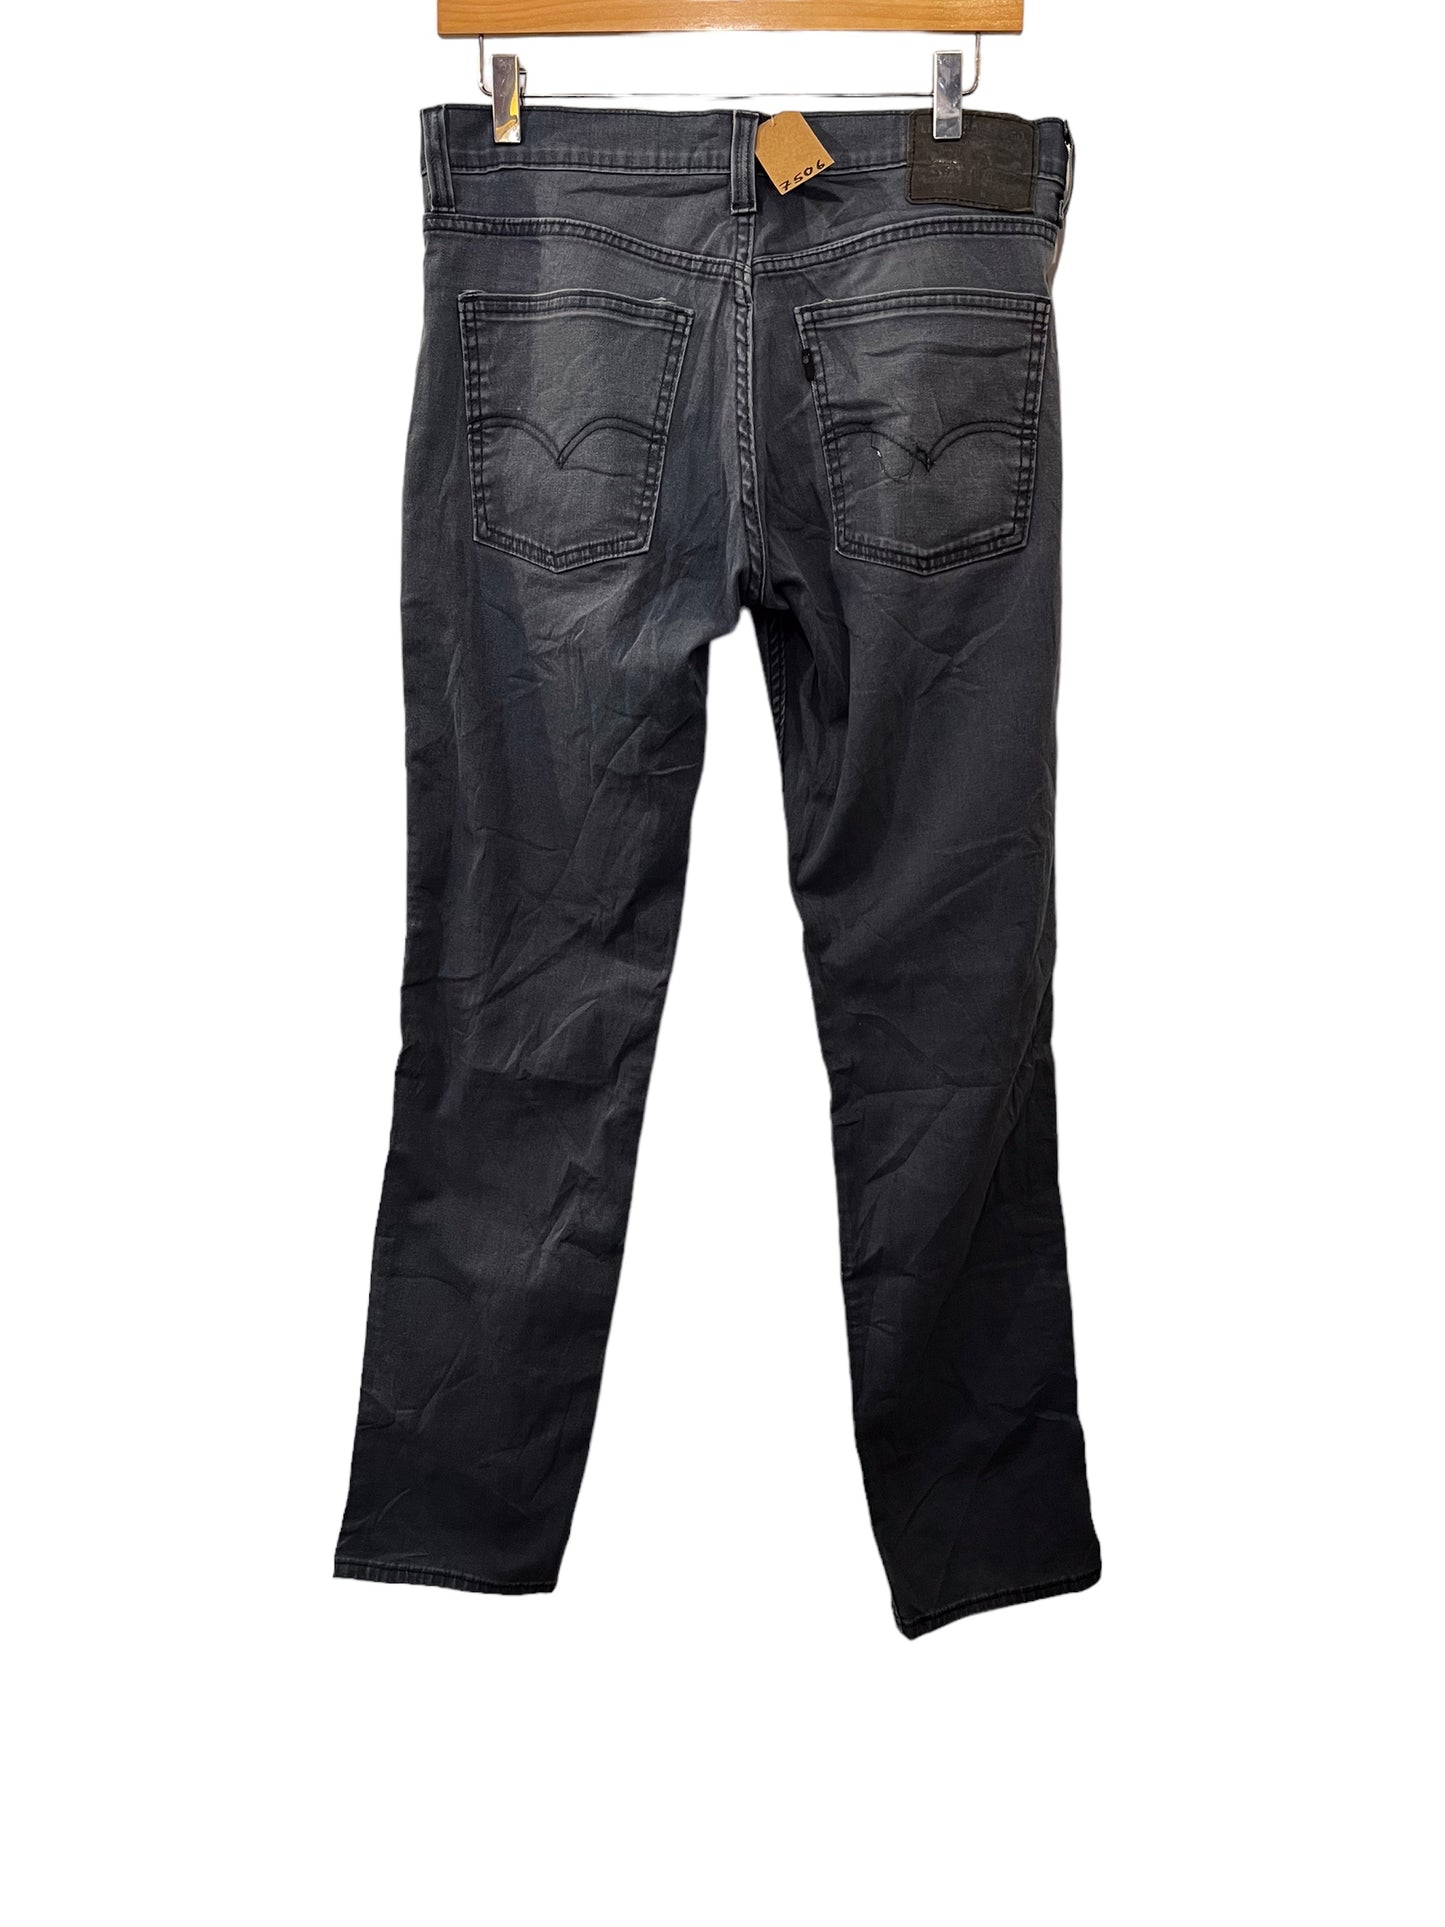 Levi 511 jeans (32x34)